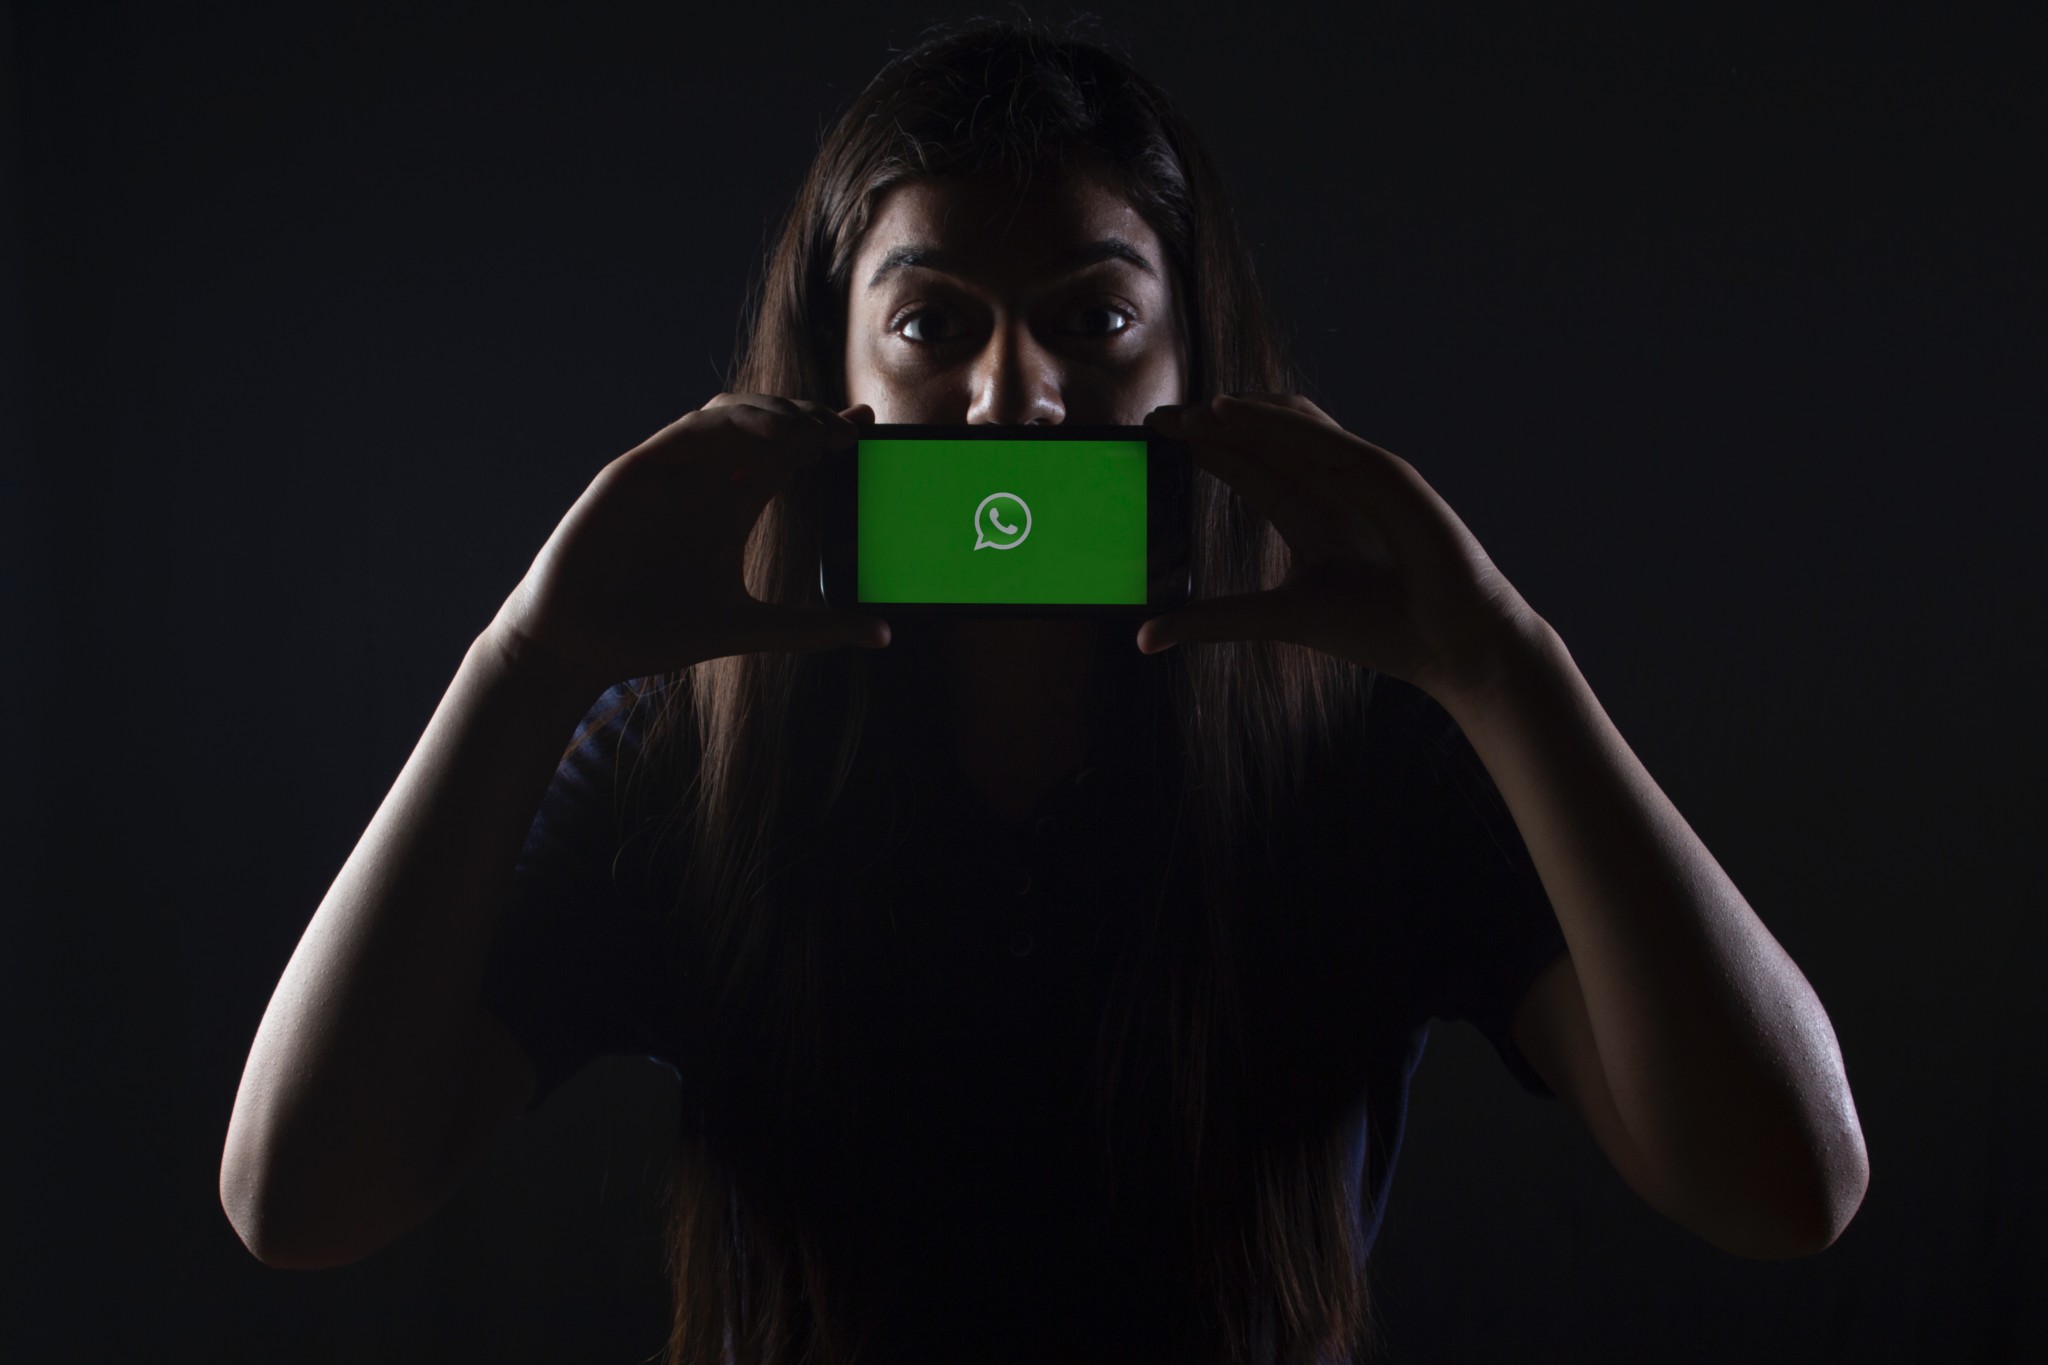 Whatsapp lancia lo scambio di criptovalute